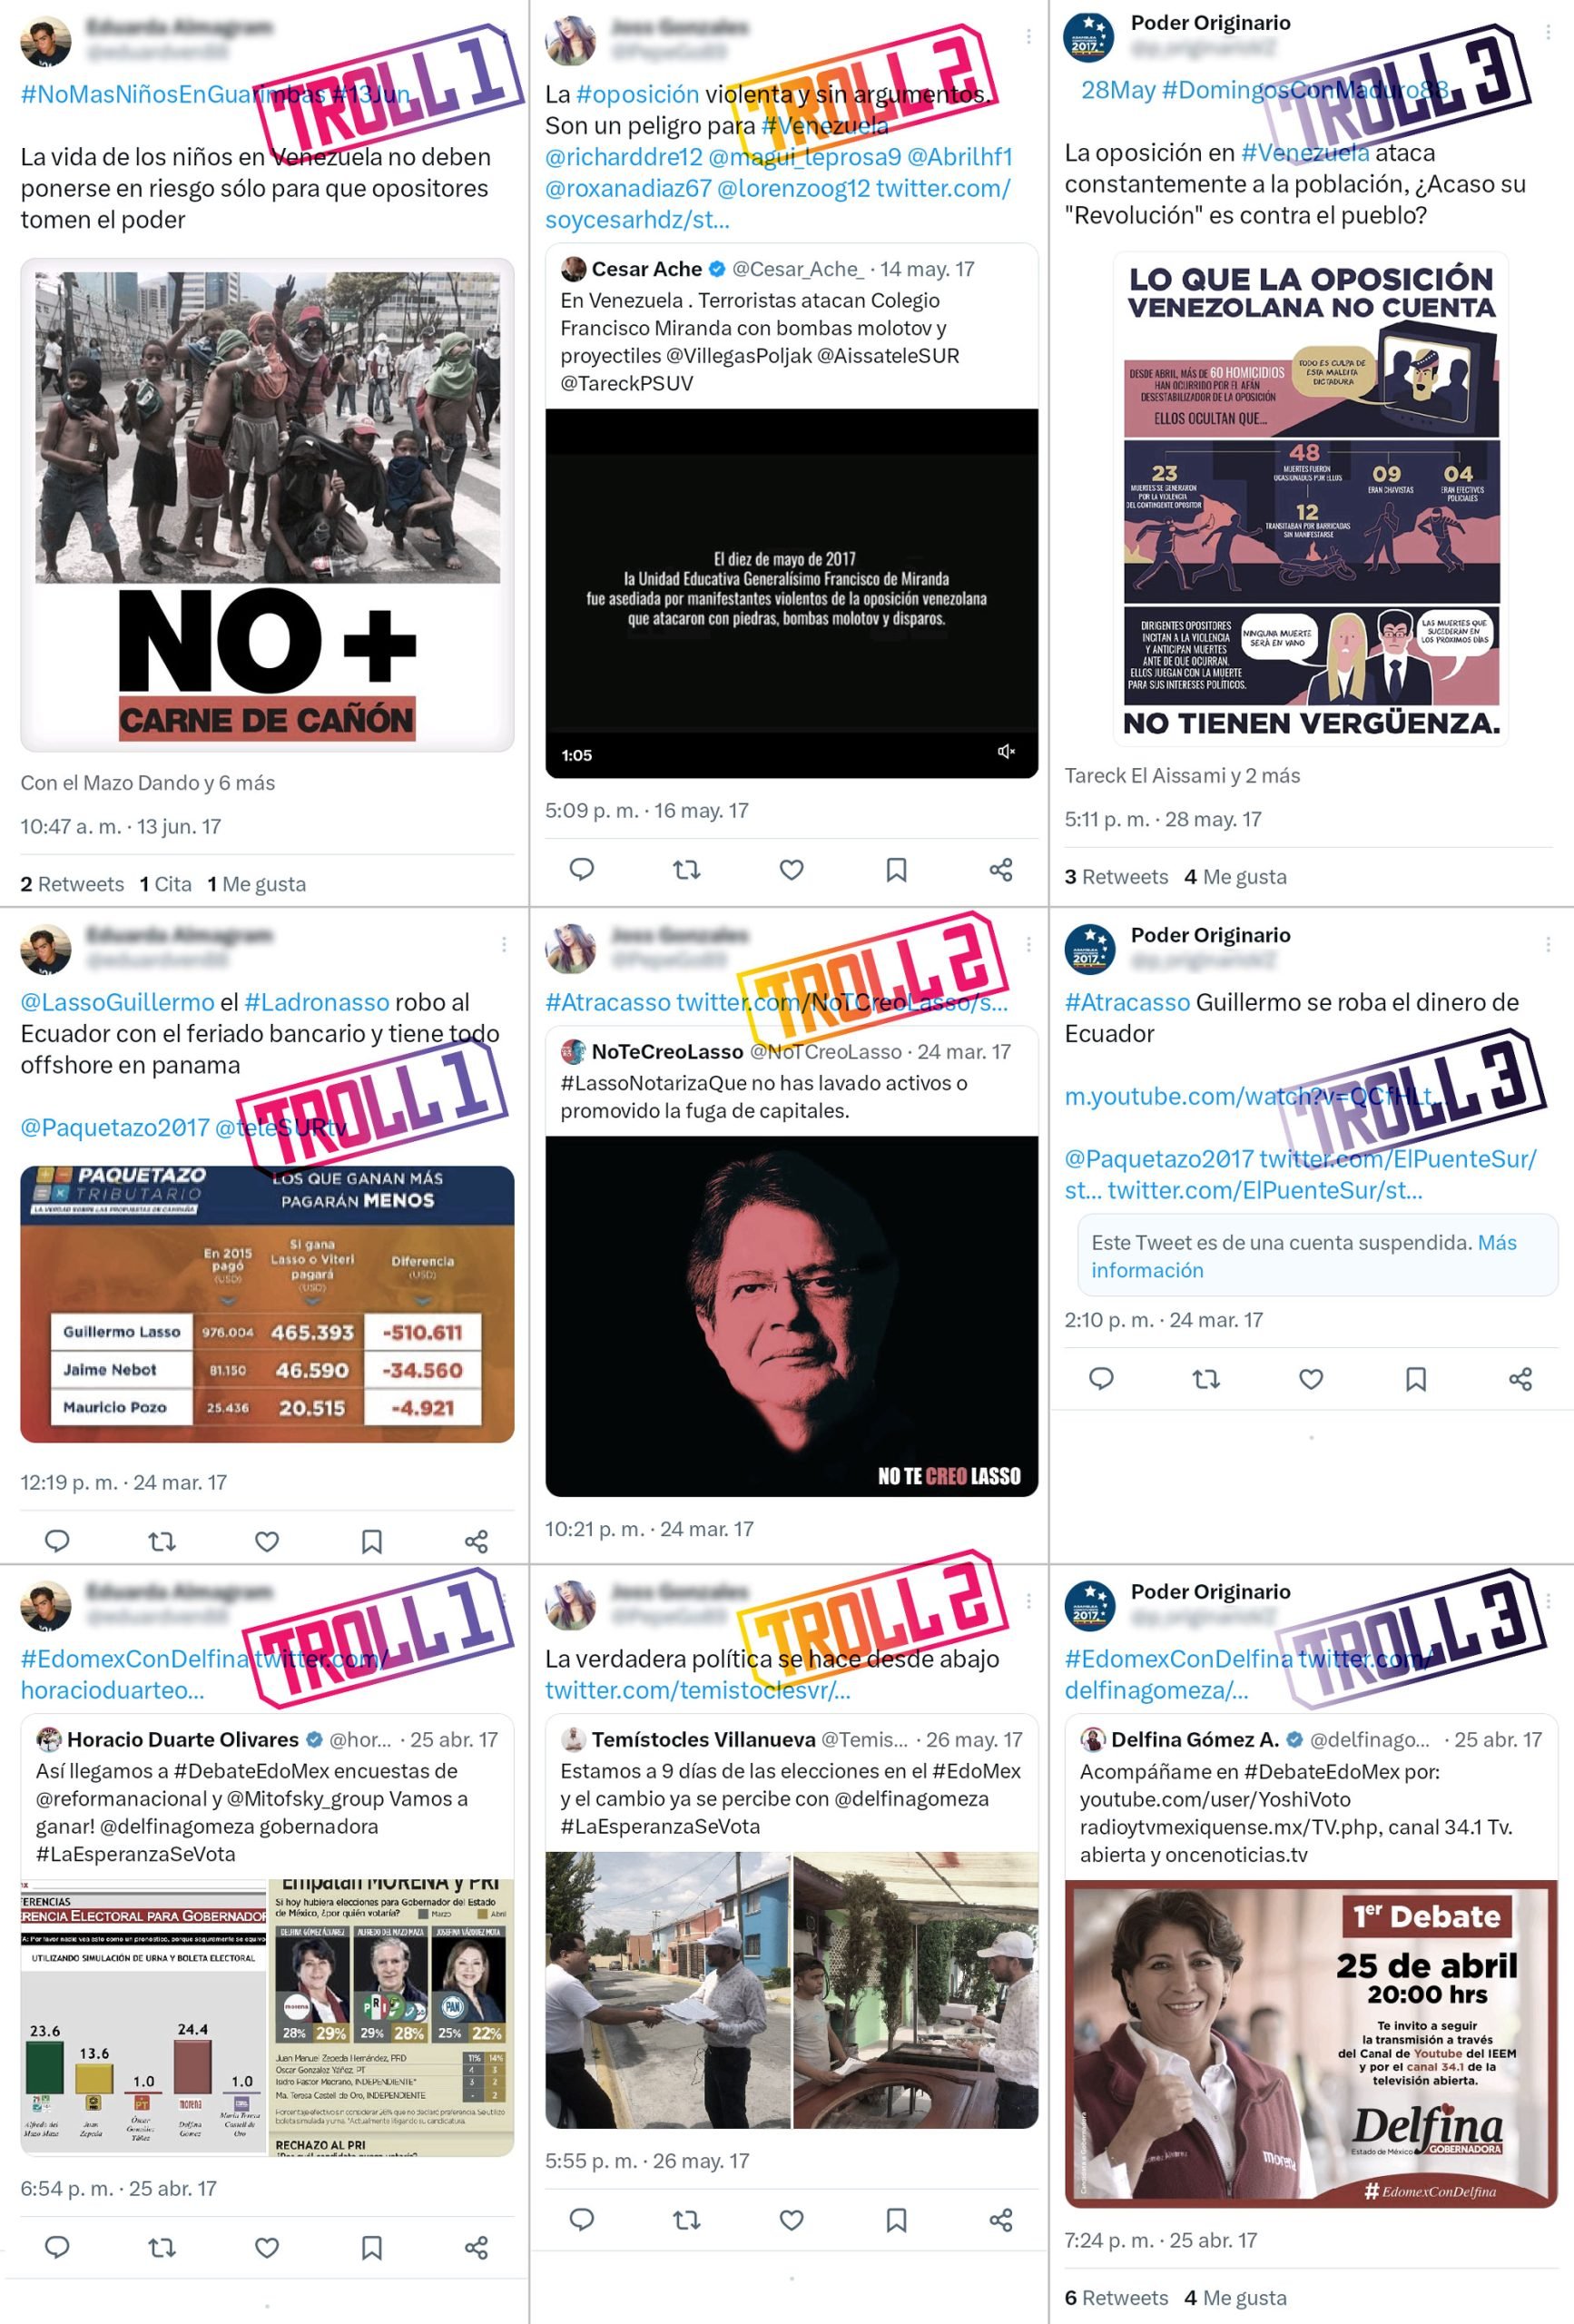 Capturas de pantalla que muestran cuentas falsas de Twitter que usó Neurona para diseminar paralelamente información falsa sobre Lasso y atacar a la oposición venezolana. Imágenes obtenidas de la red social Twitter